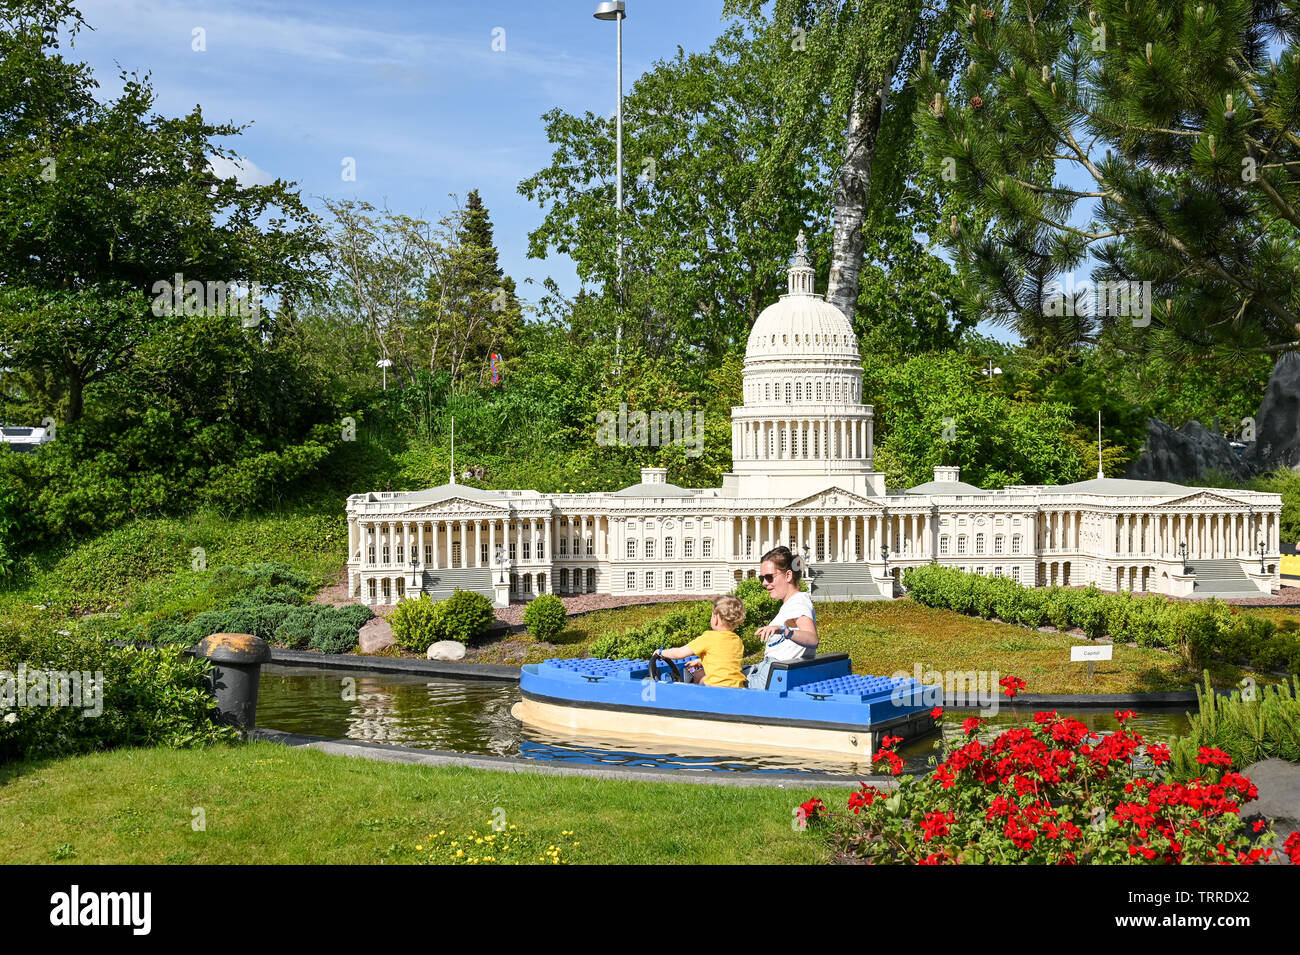 Croisière sur le canal passé une miniature de la colline du Capitole au parc Legoland à Billund. Ce parc à thème familial ouvert en 1968 et est construit par 65 millions de briques Lego. Banque D'Images